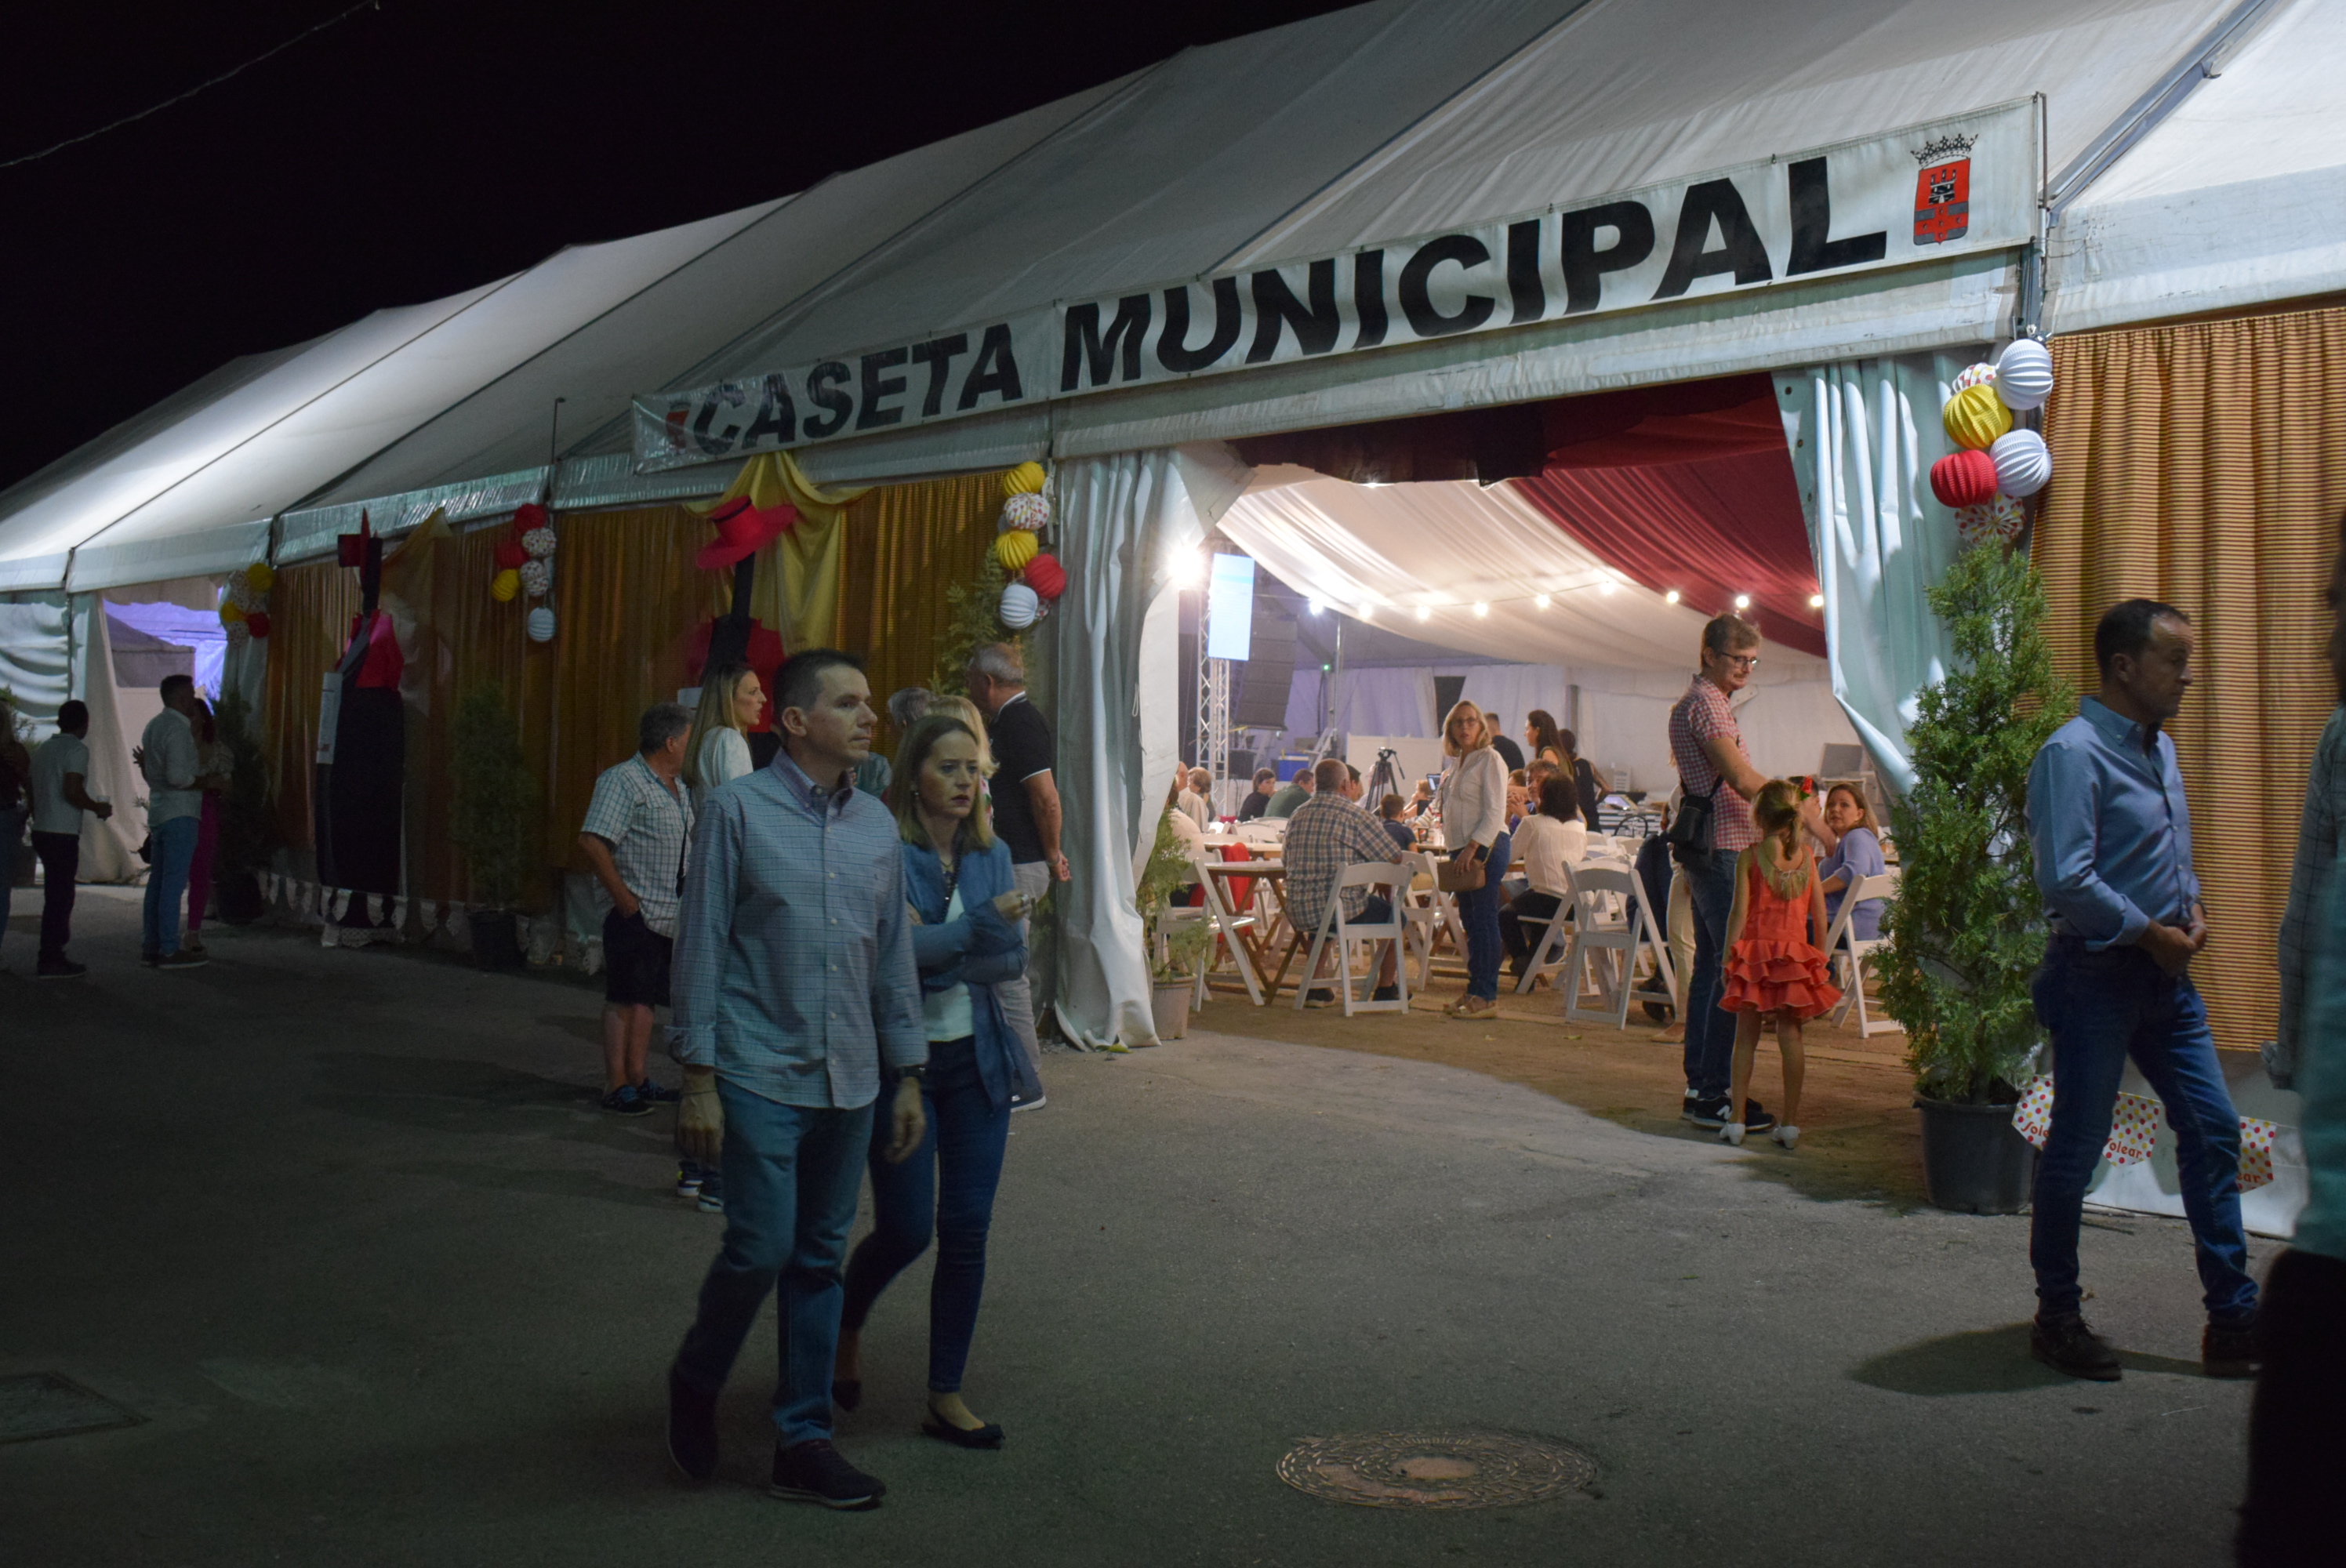 "Abierta licitación para explotación de café-bar-repostería en Caseta Municipal durante fiesta local en Almodóvar del Río"